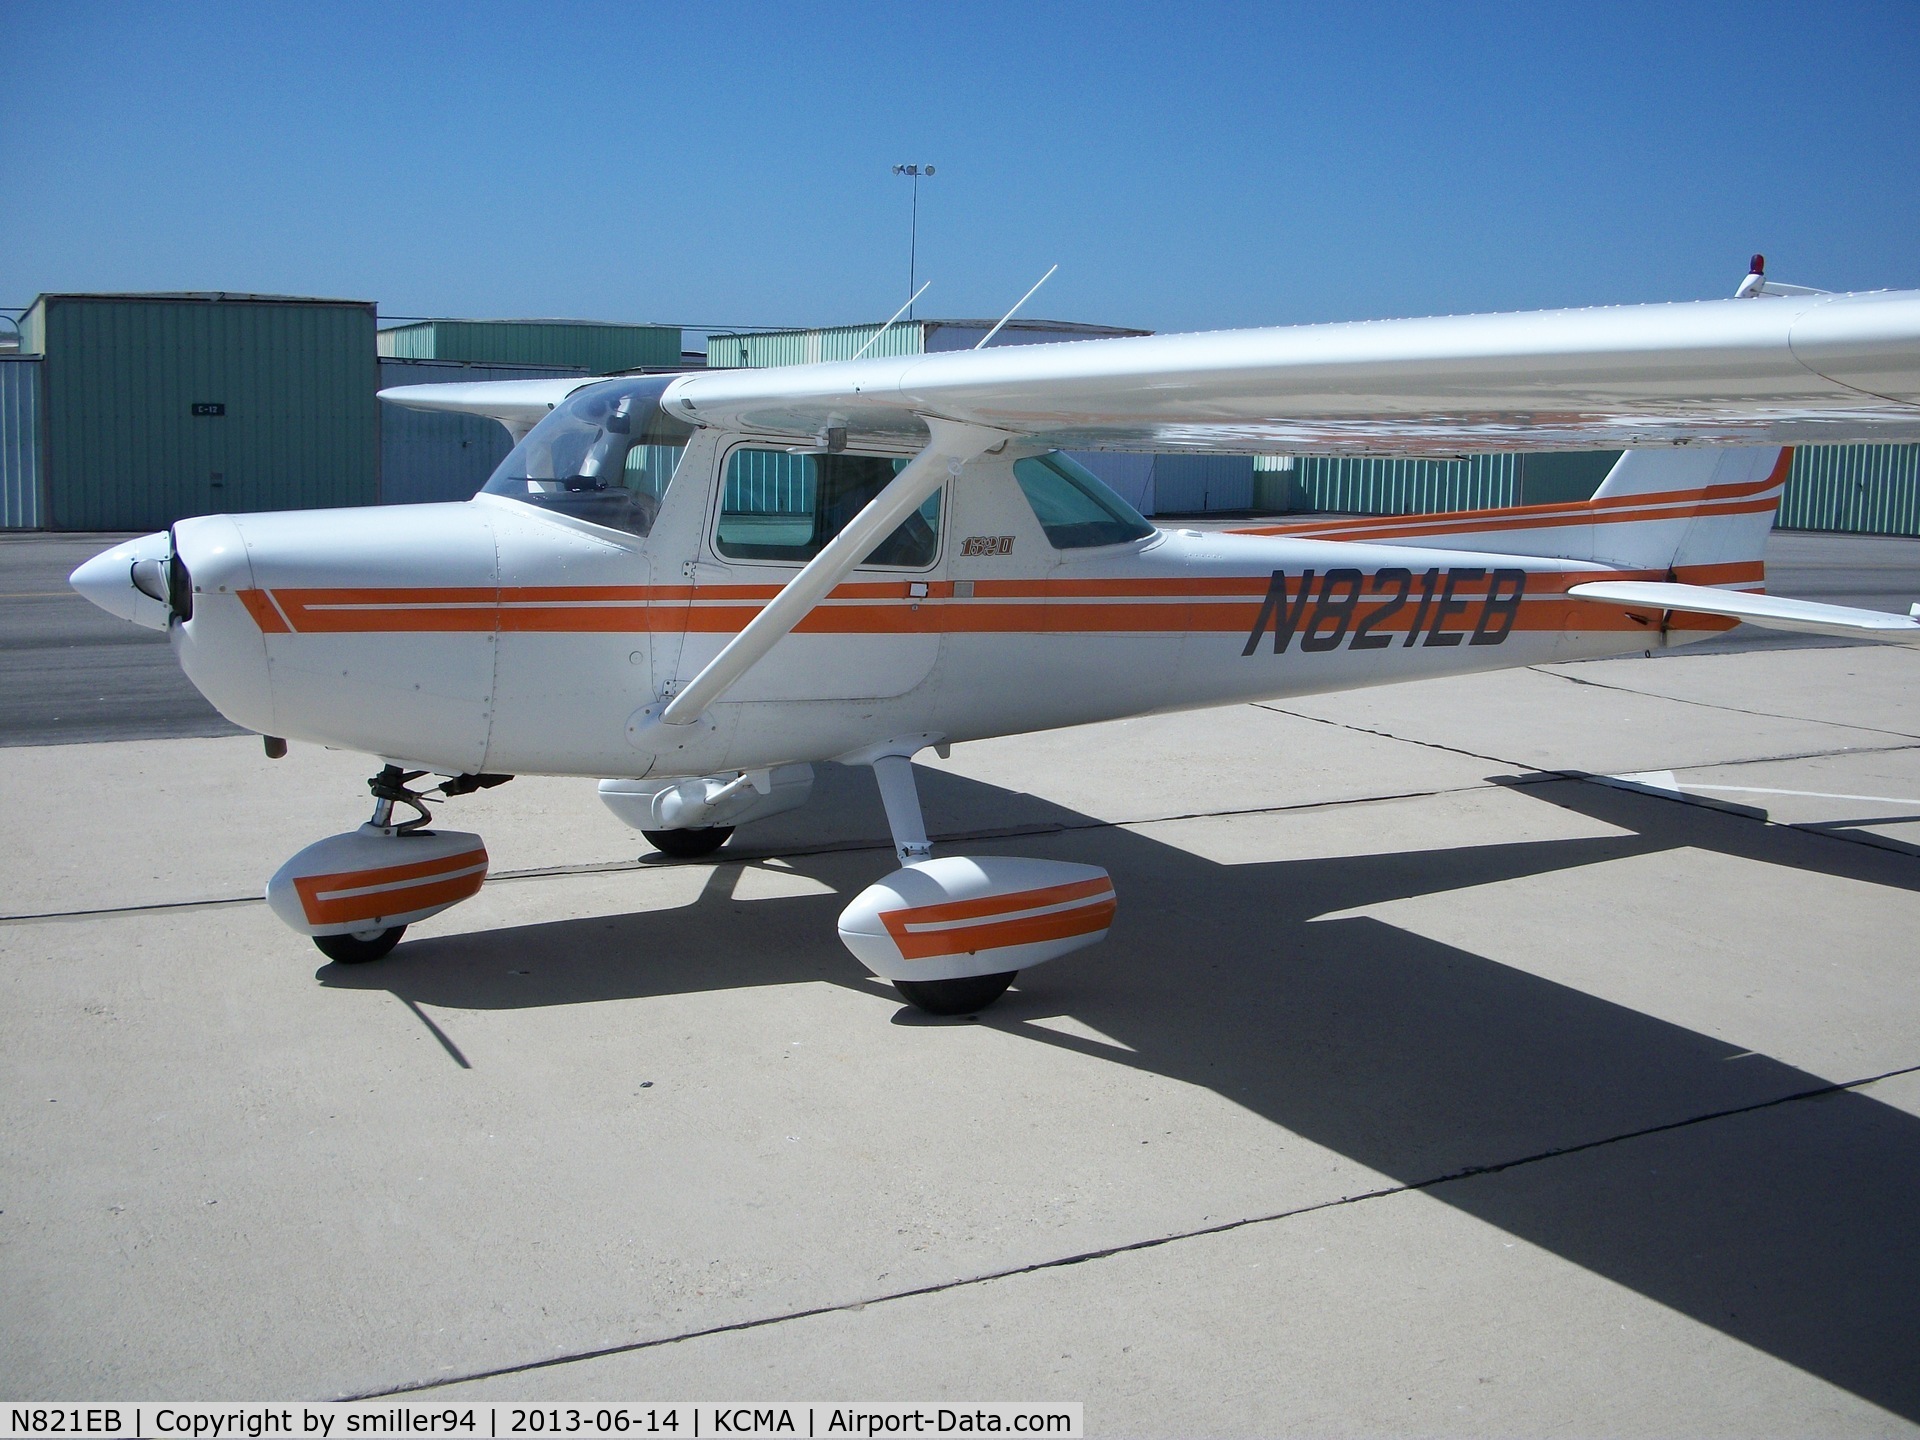 N821EB, 1981 Cessna 152 C/N 15285210, Cessna 152 at KCMA